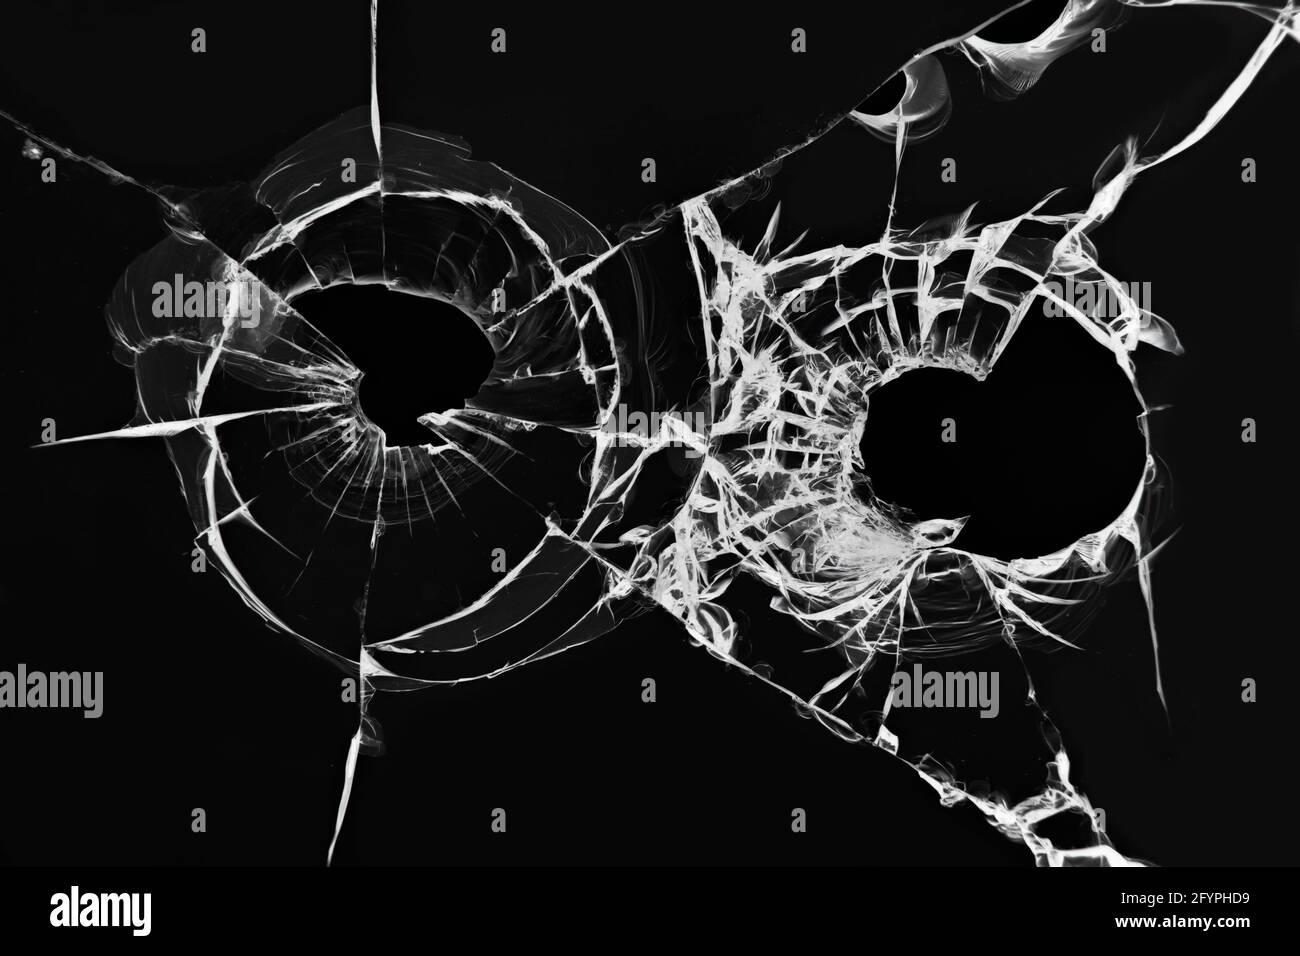 L'effet du verre brisé d'une prise de vue. Illustration de trous de balles de pistolet dans le pare-brise d'une voiture sur fond noir Banque D'Images